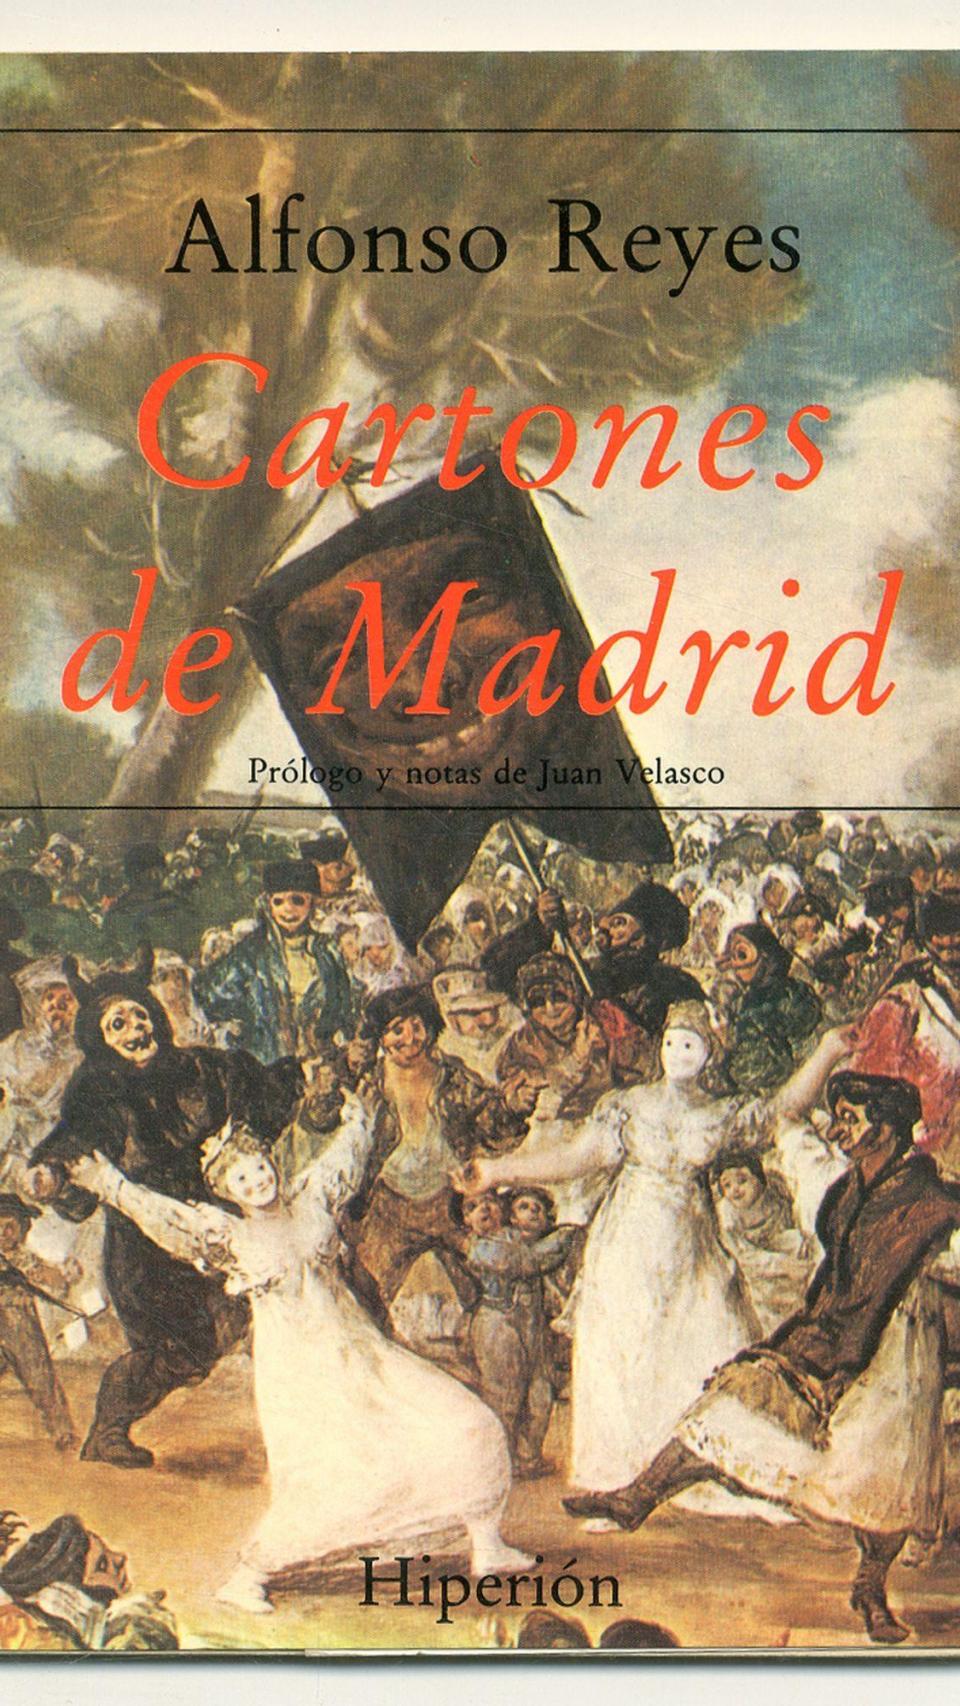 'Cartones de Madrid'